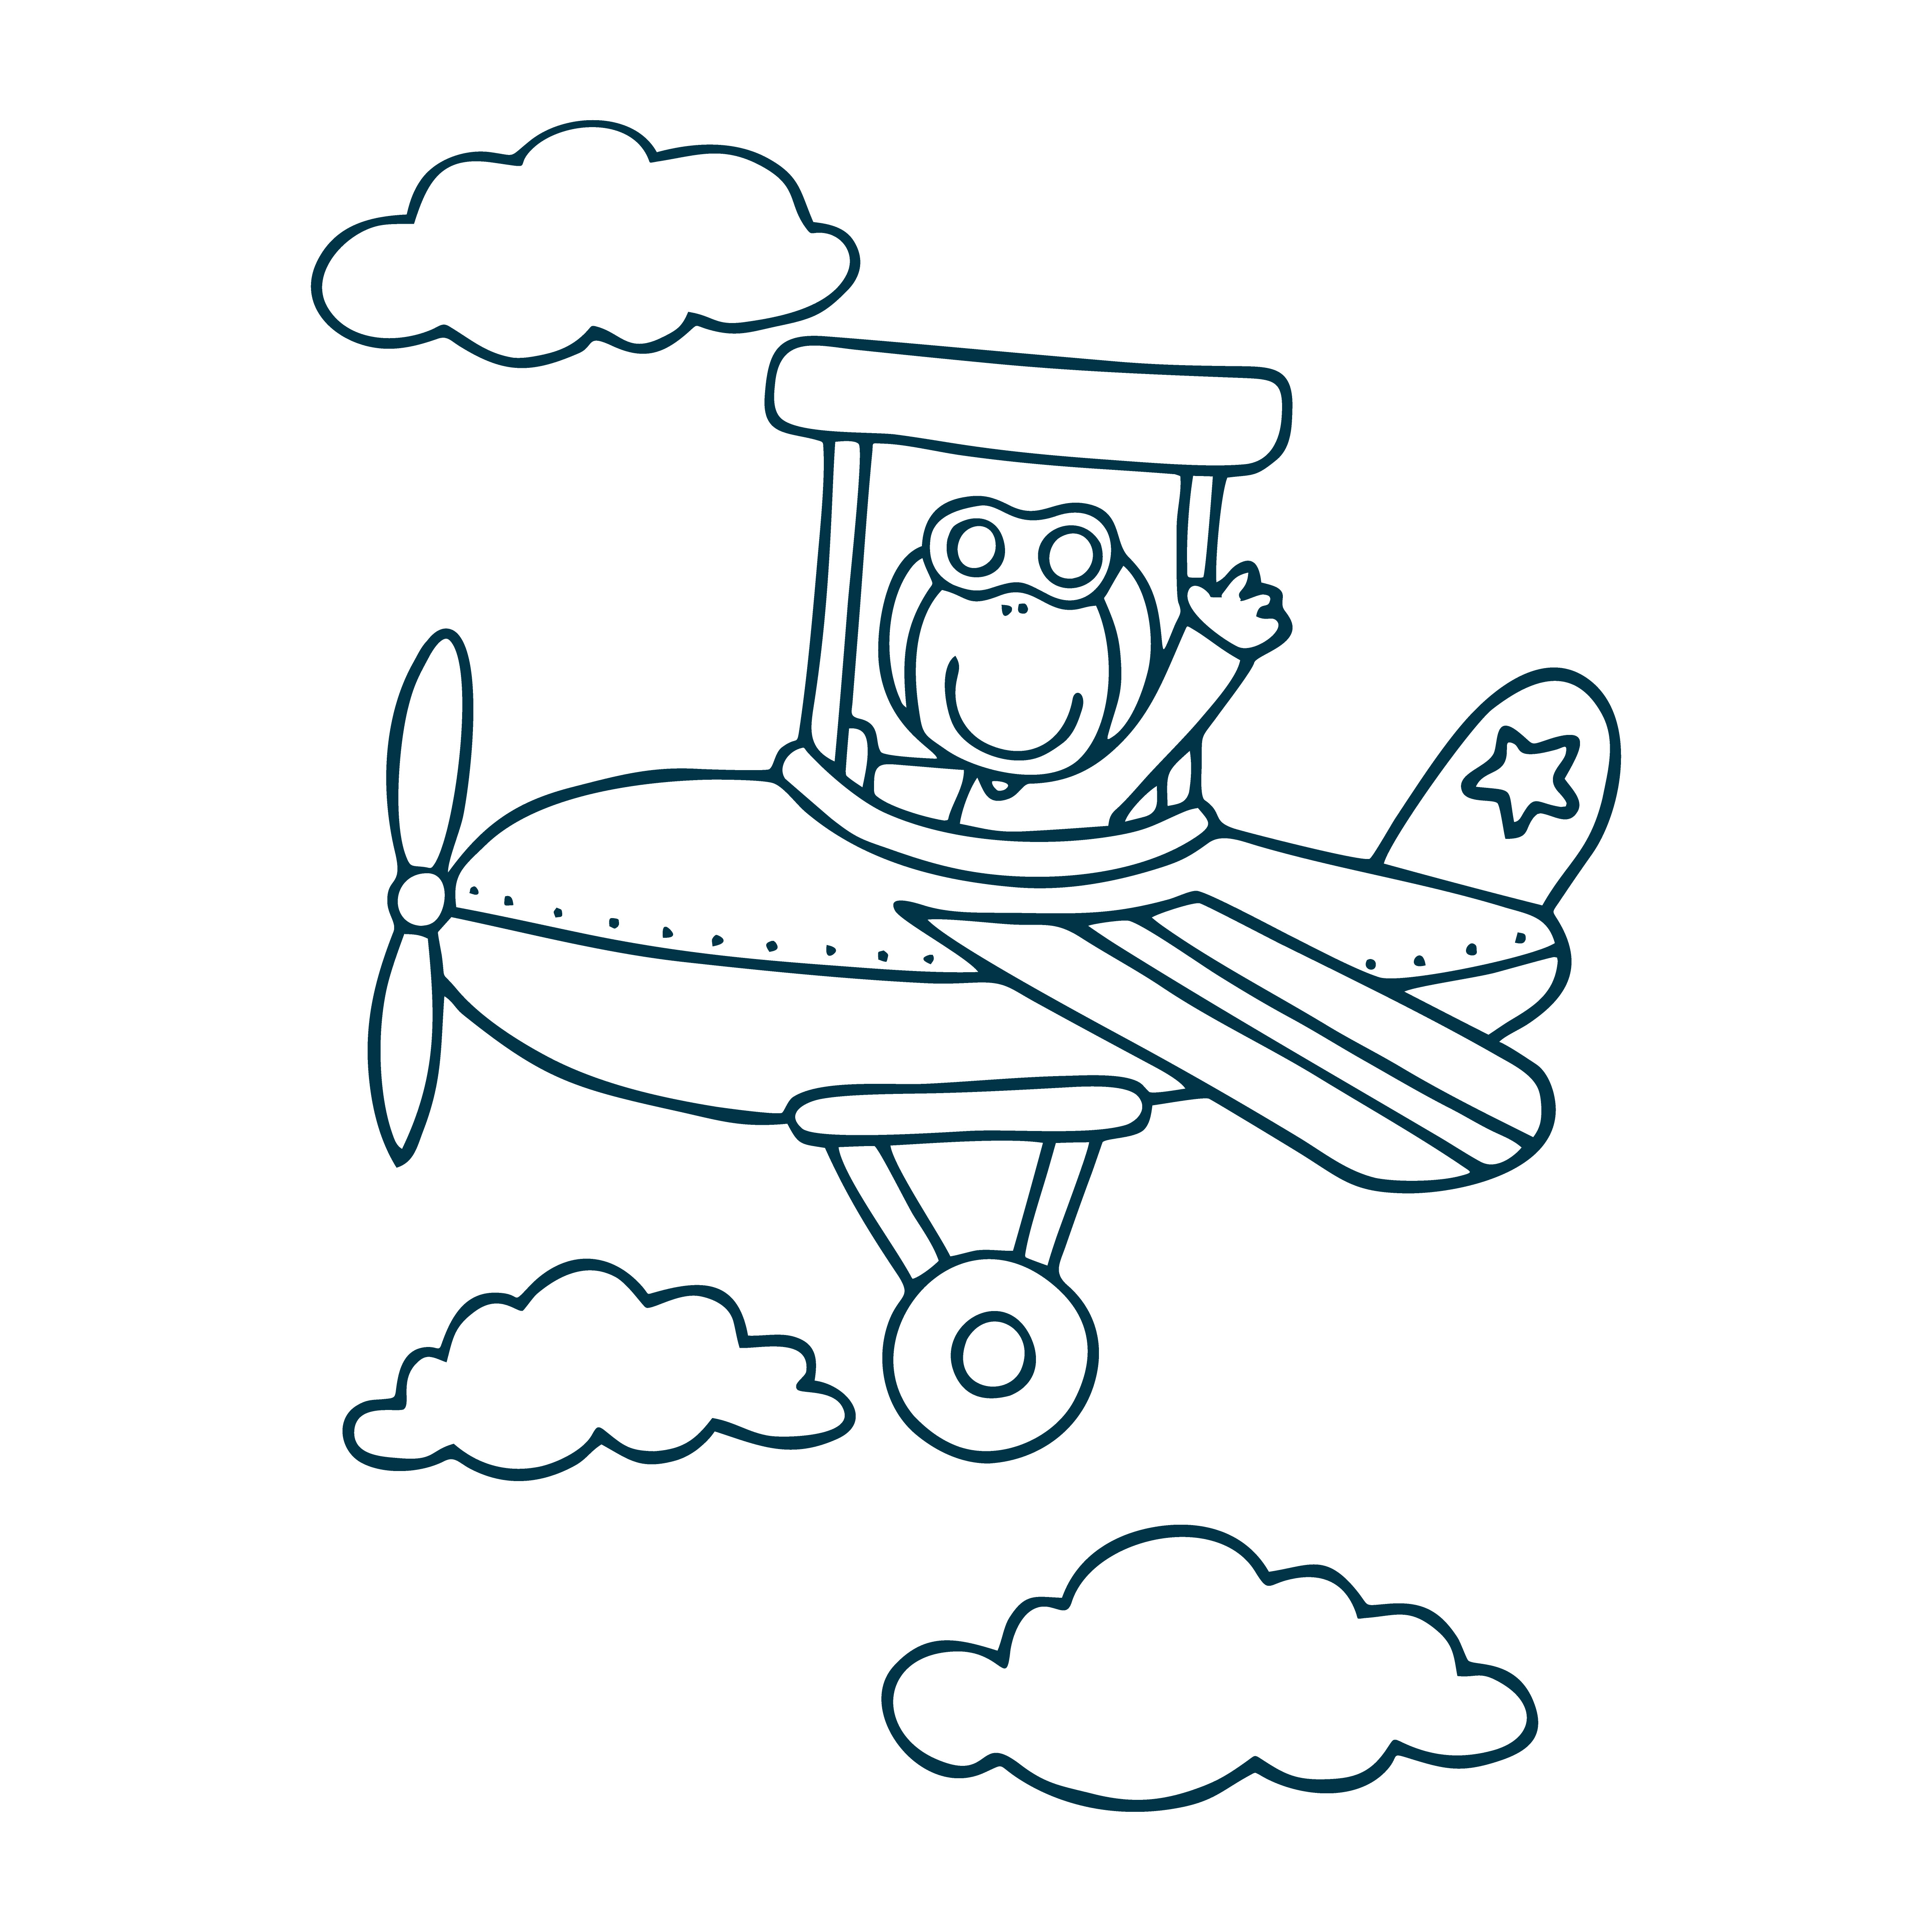 Раскраска игрушечный самолет в облаках и звездой на хвосте формата А4 в высоком качестве